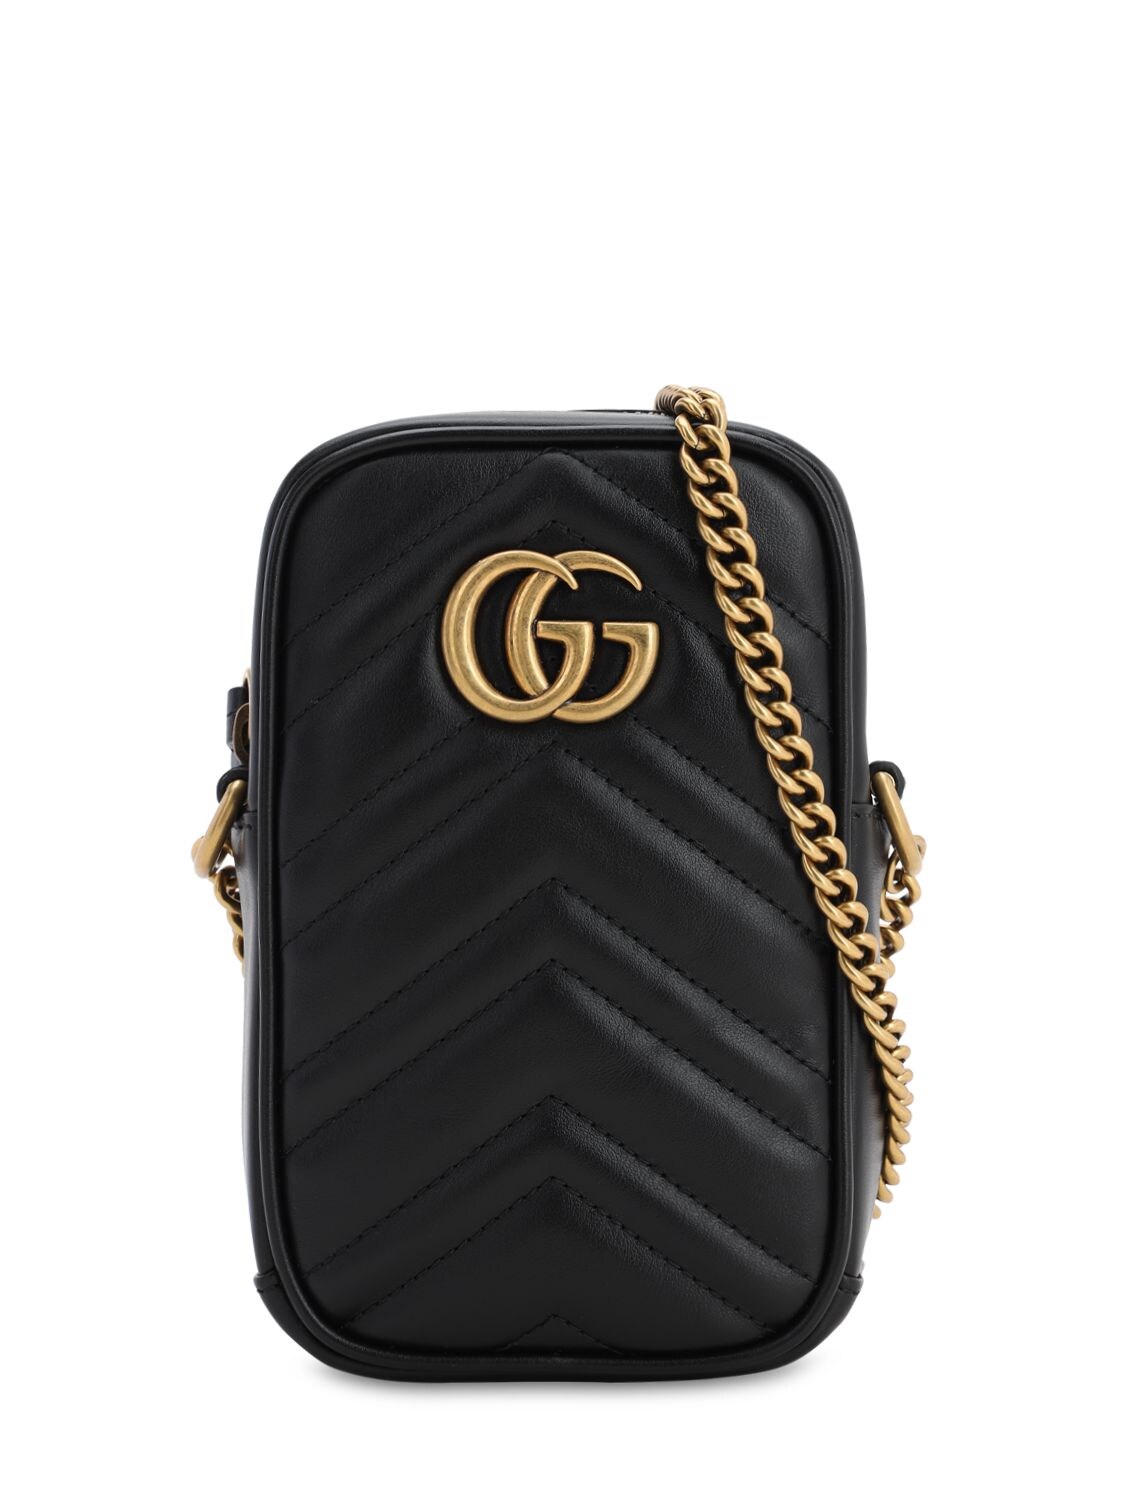 Gg Marmont 2.0 Leather Shoulder Bag